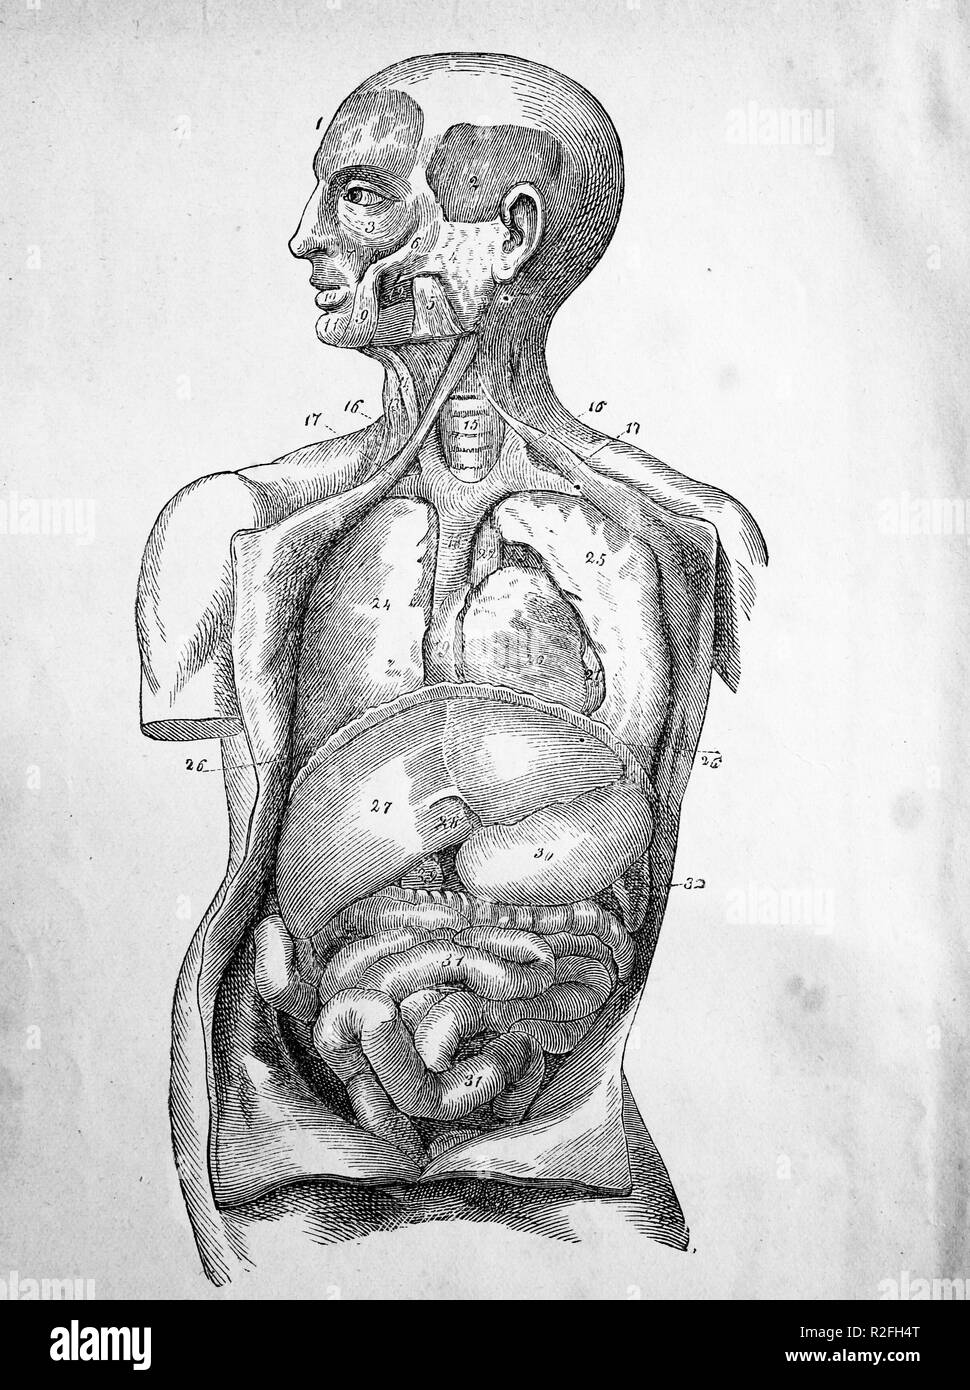 L'amélioration de la reproduction numérique des illustrations médicales, d'organes humains à partir de 1880, d'un tirage original du 19ème siècle Banque D'Images